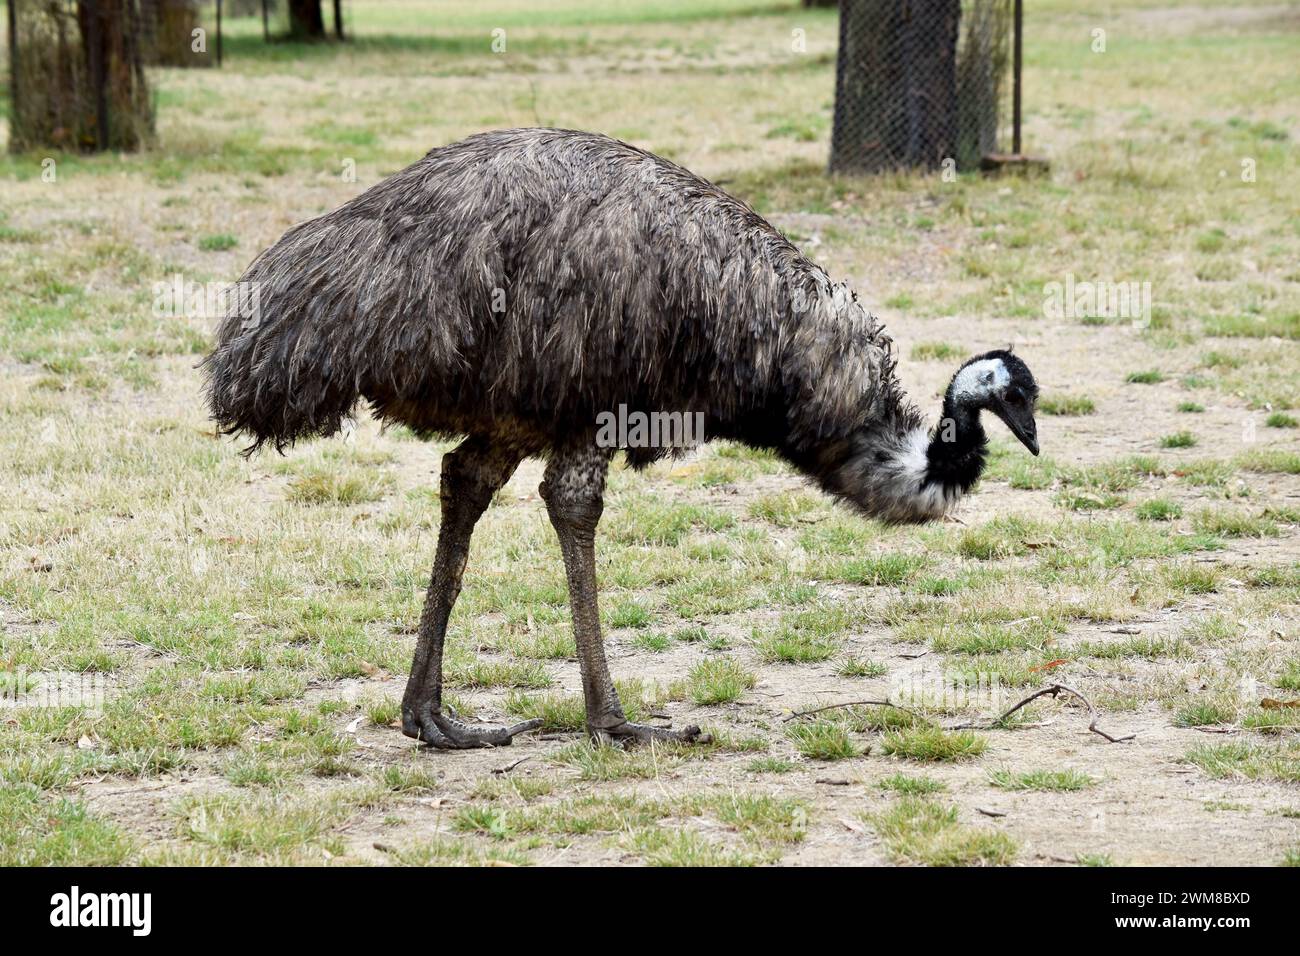 Emus sind mit primitiven Federn bedeckt, die dunkelbraun bis graubraun mit schwarzen Spitzen sind. Der Hals der EWU ist bläulich schwarz und meist federfrei. Stockfoto